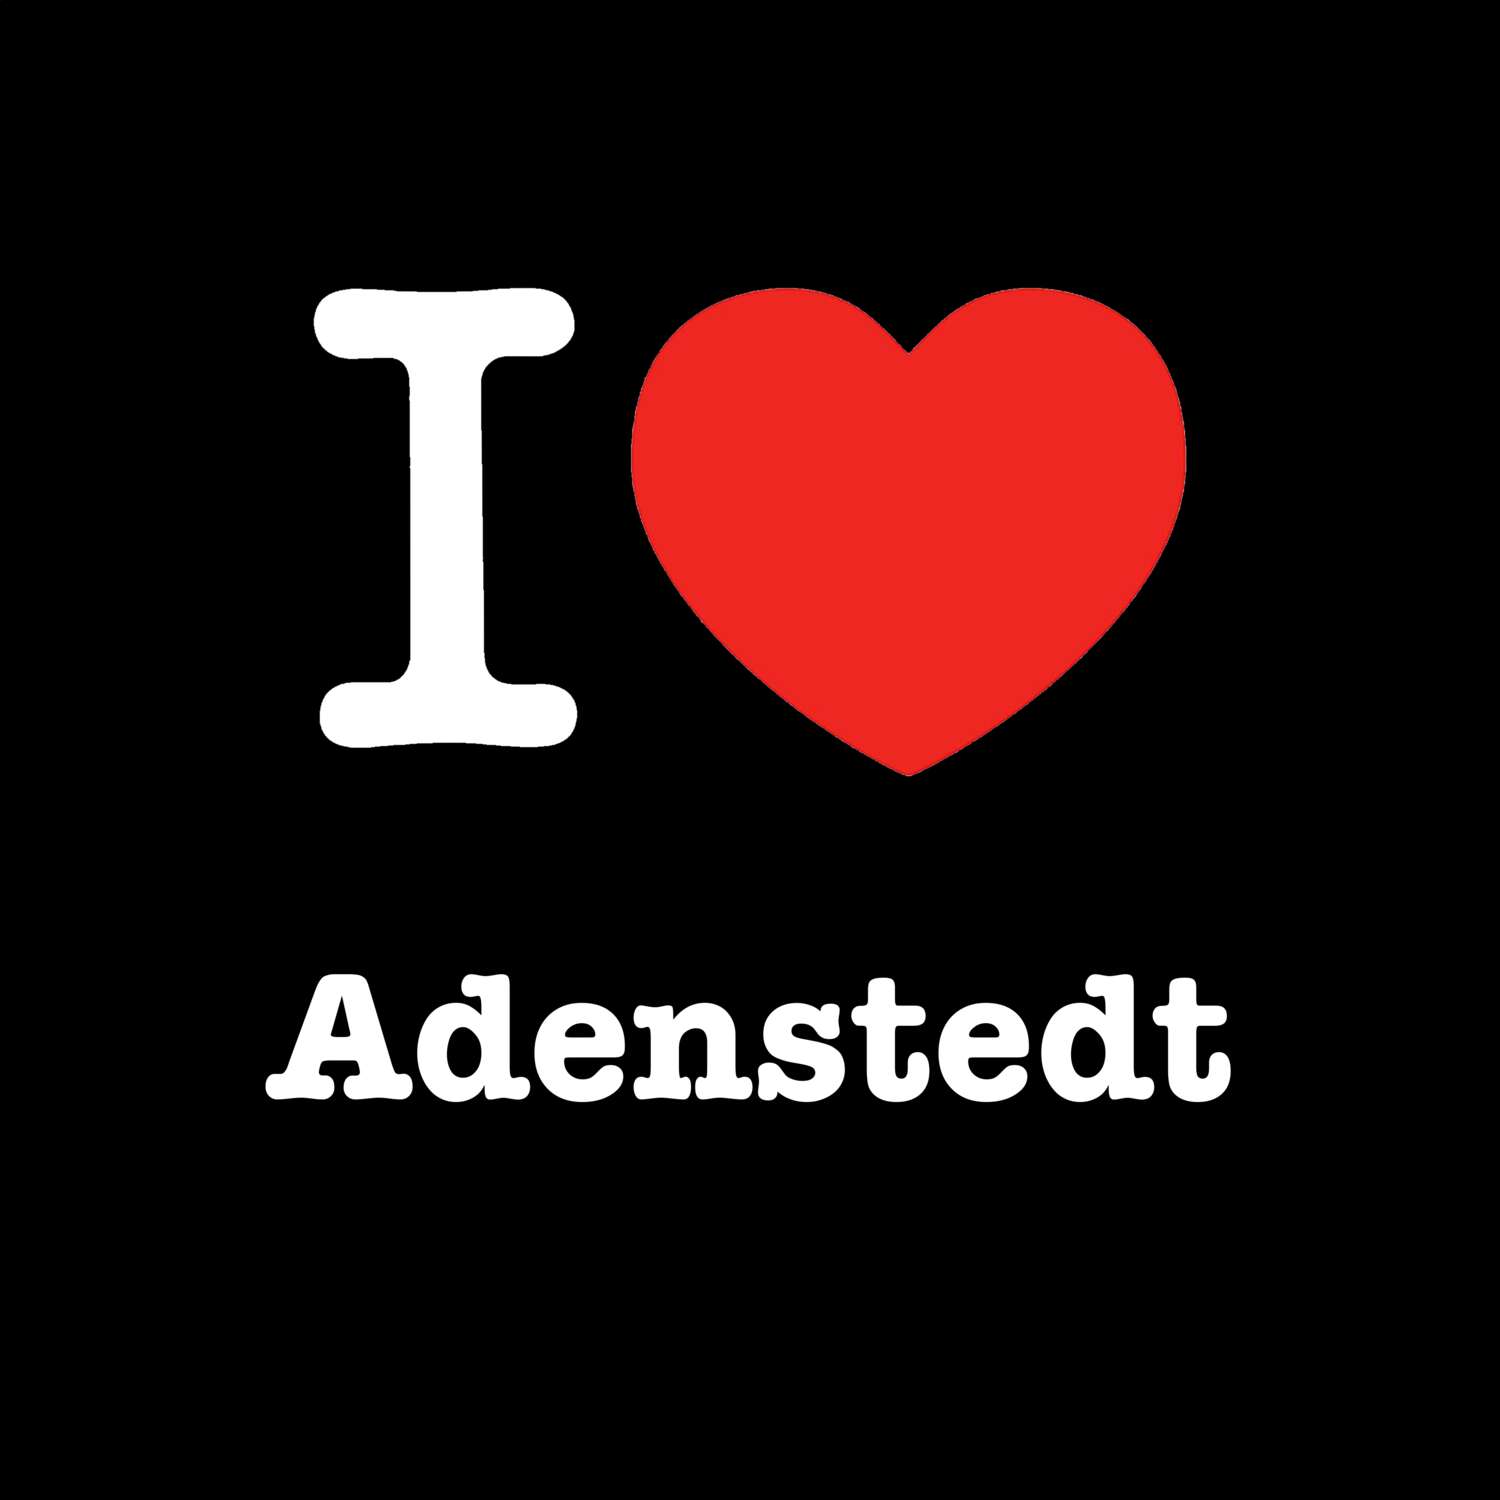 Adenstedt T-Shirt »I love«